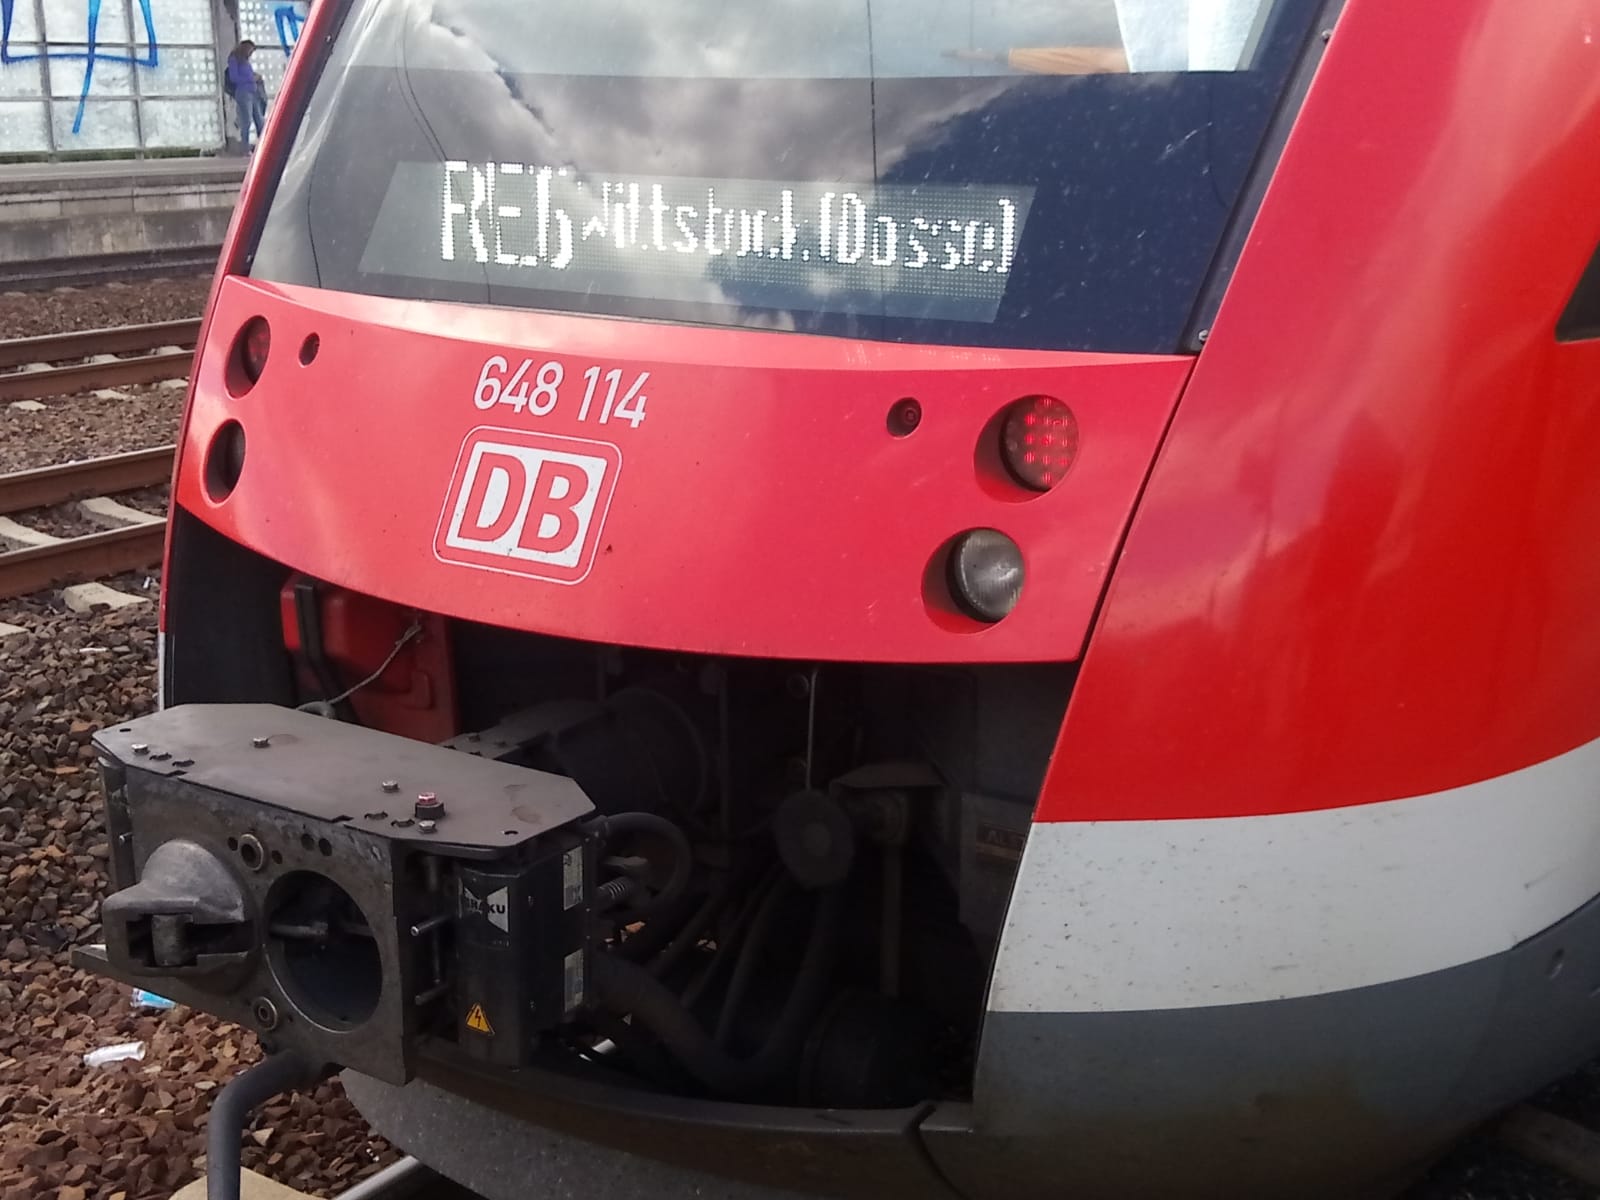 reportnet24.de - DB - Fahrplanwechsel für Berlin, Brandenburg und